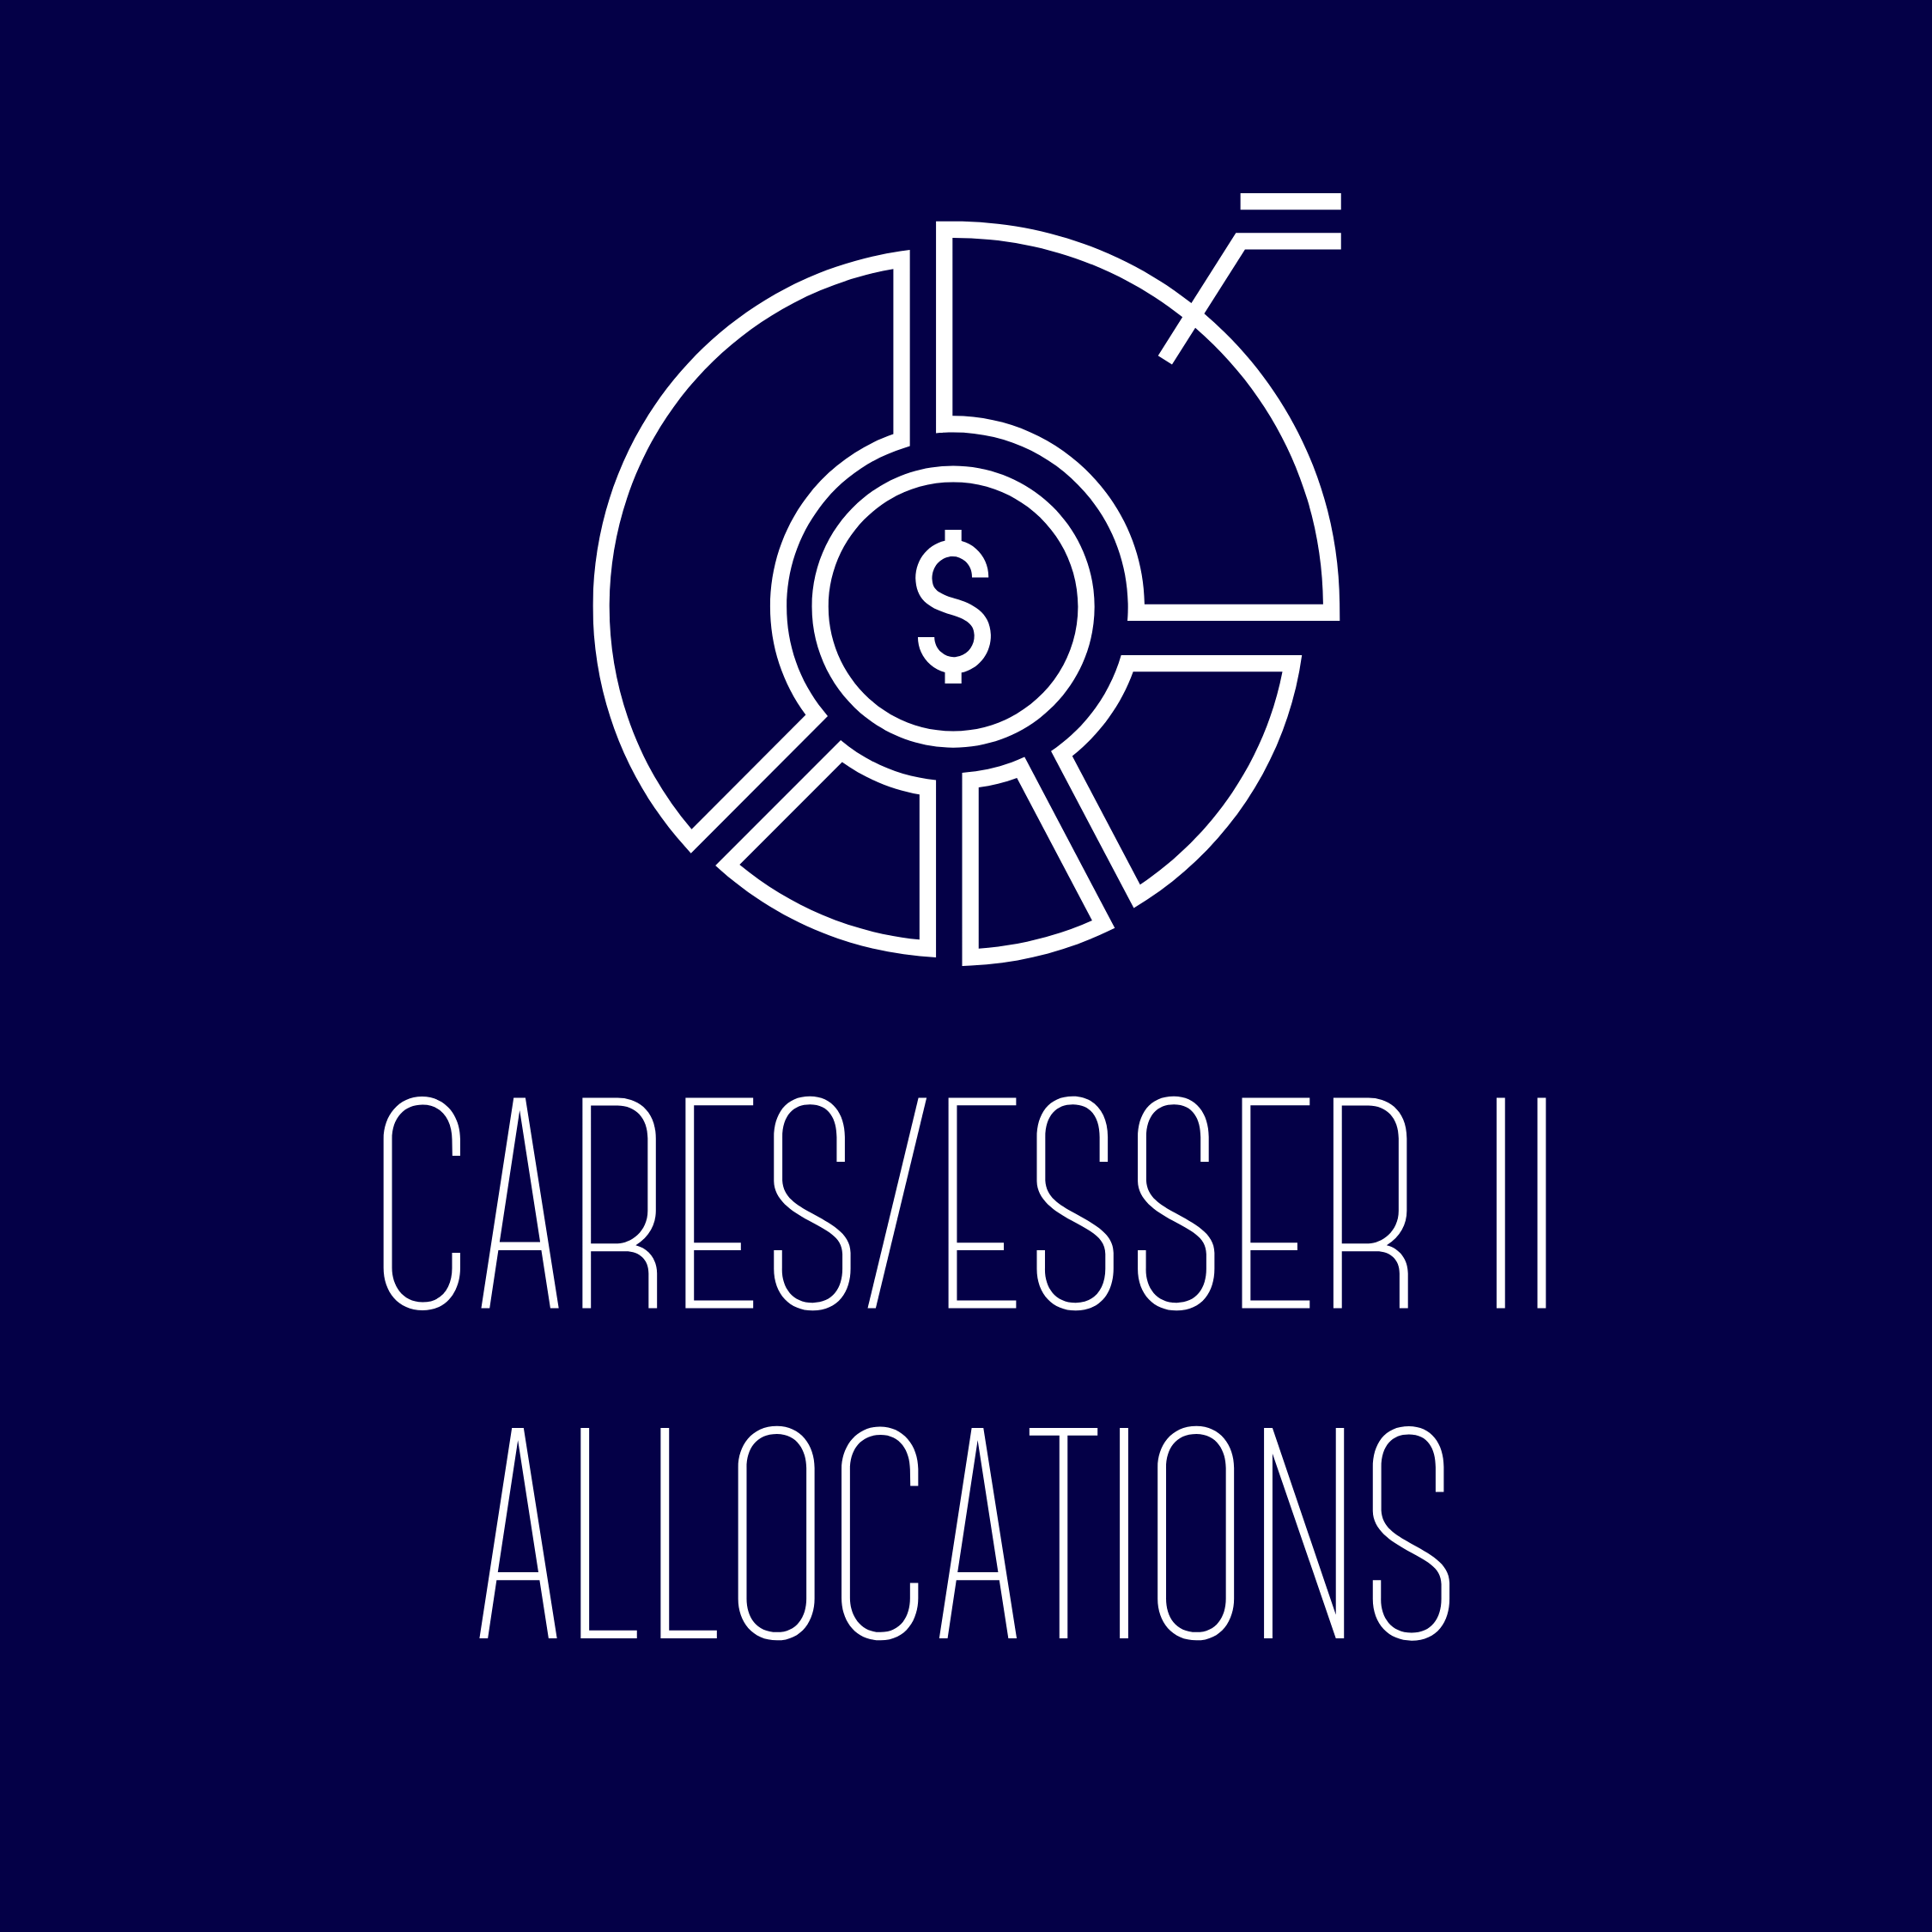 CARES/ESSER II Allocations